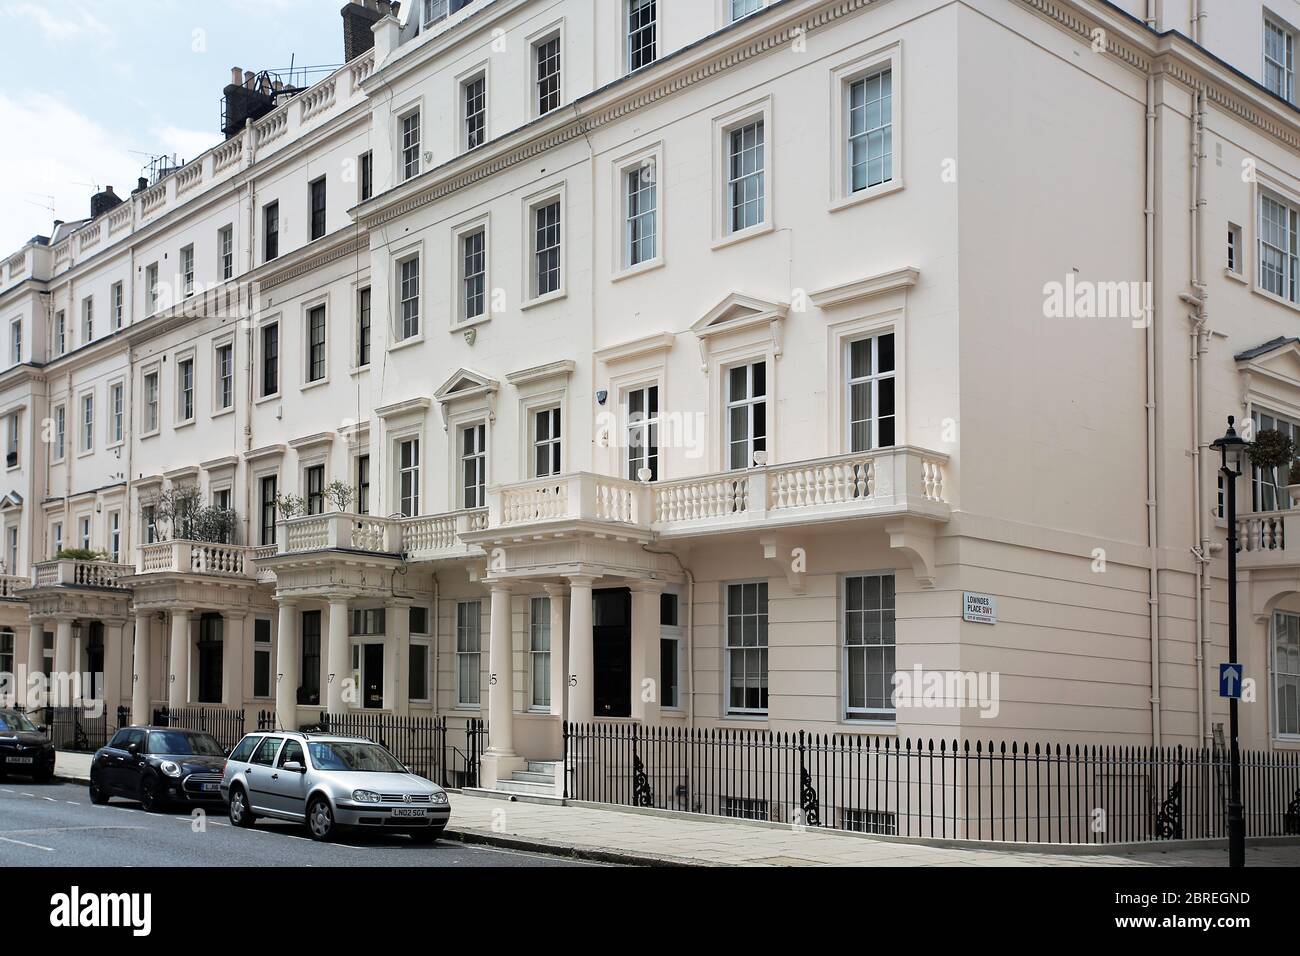 Entrées de maisons de ville élégantes dans le quartier riche de Belgravia à Londres. Londres, Royaume-Uni Banque D'Images